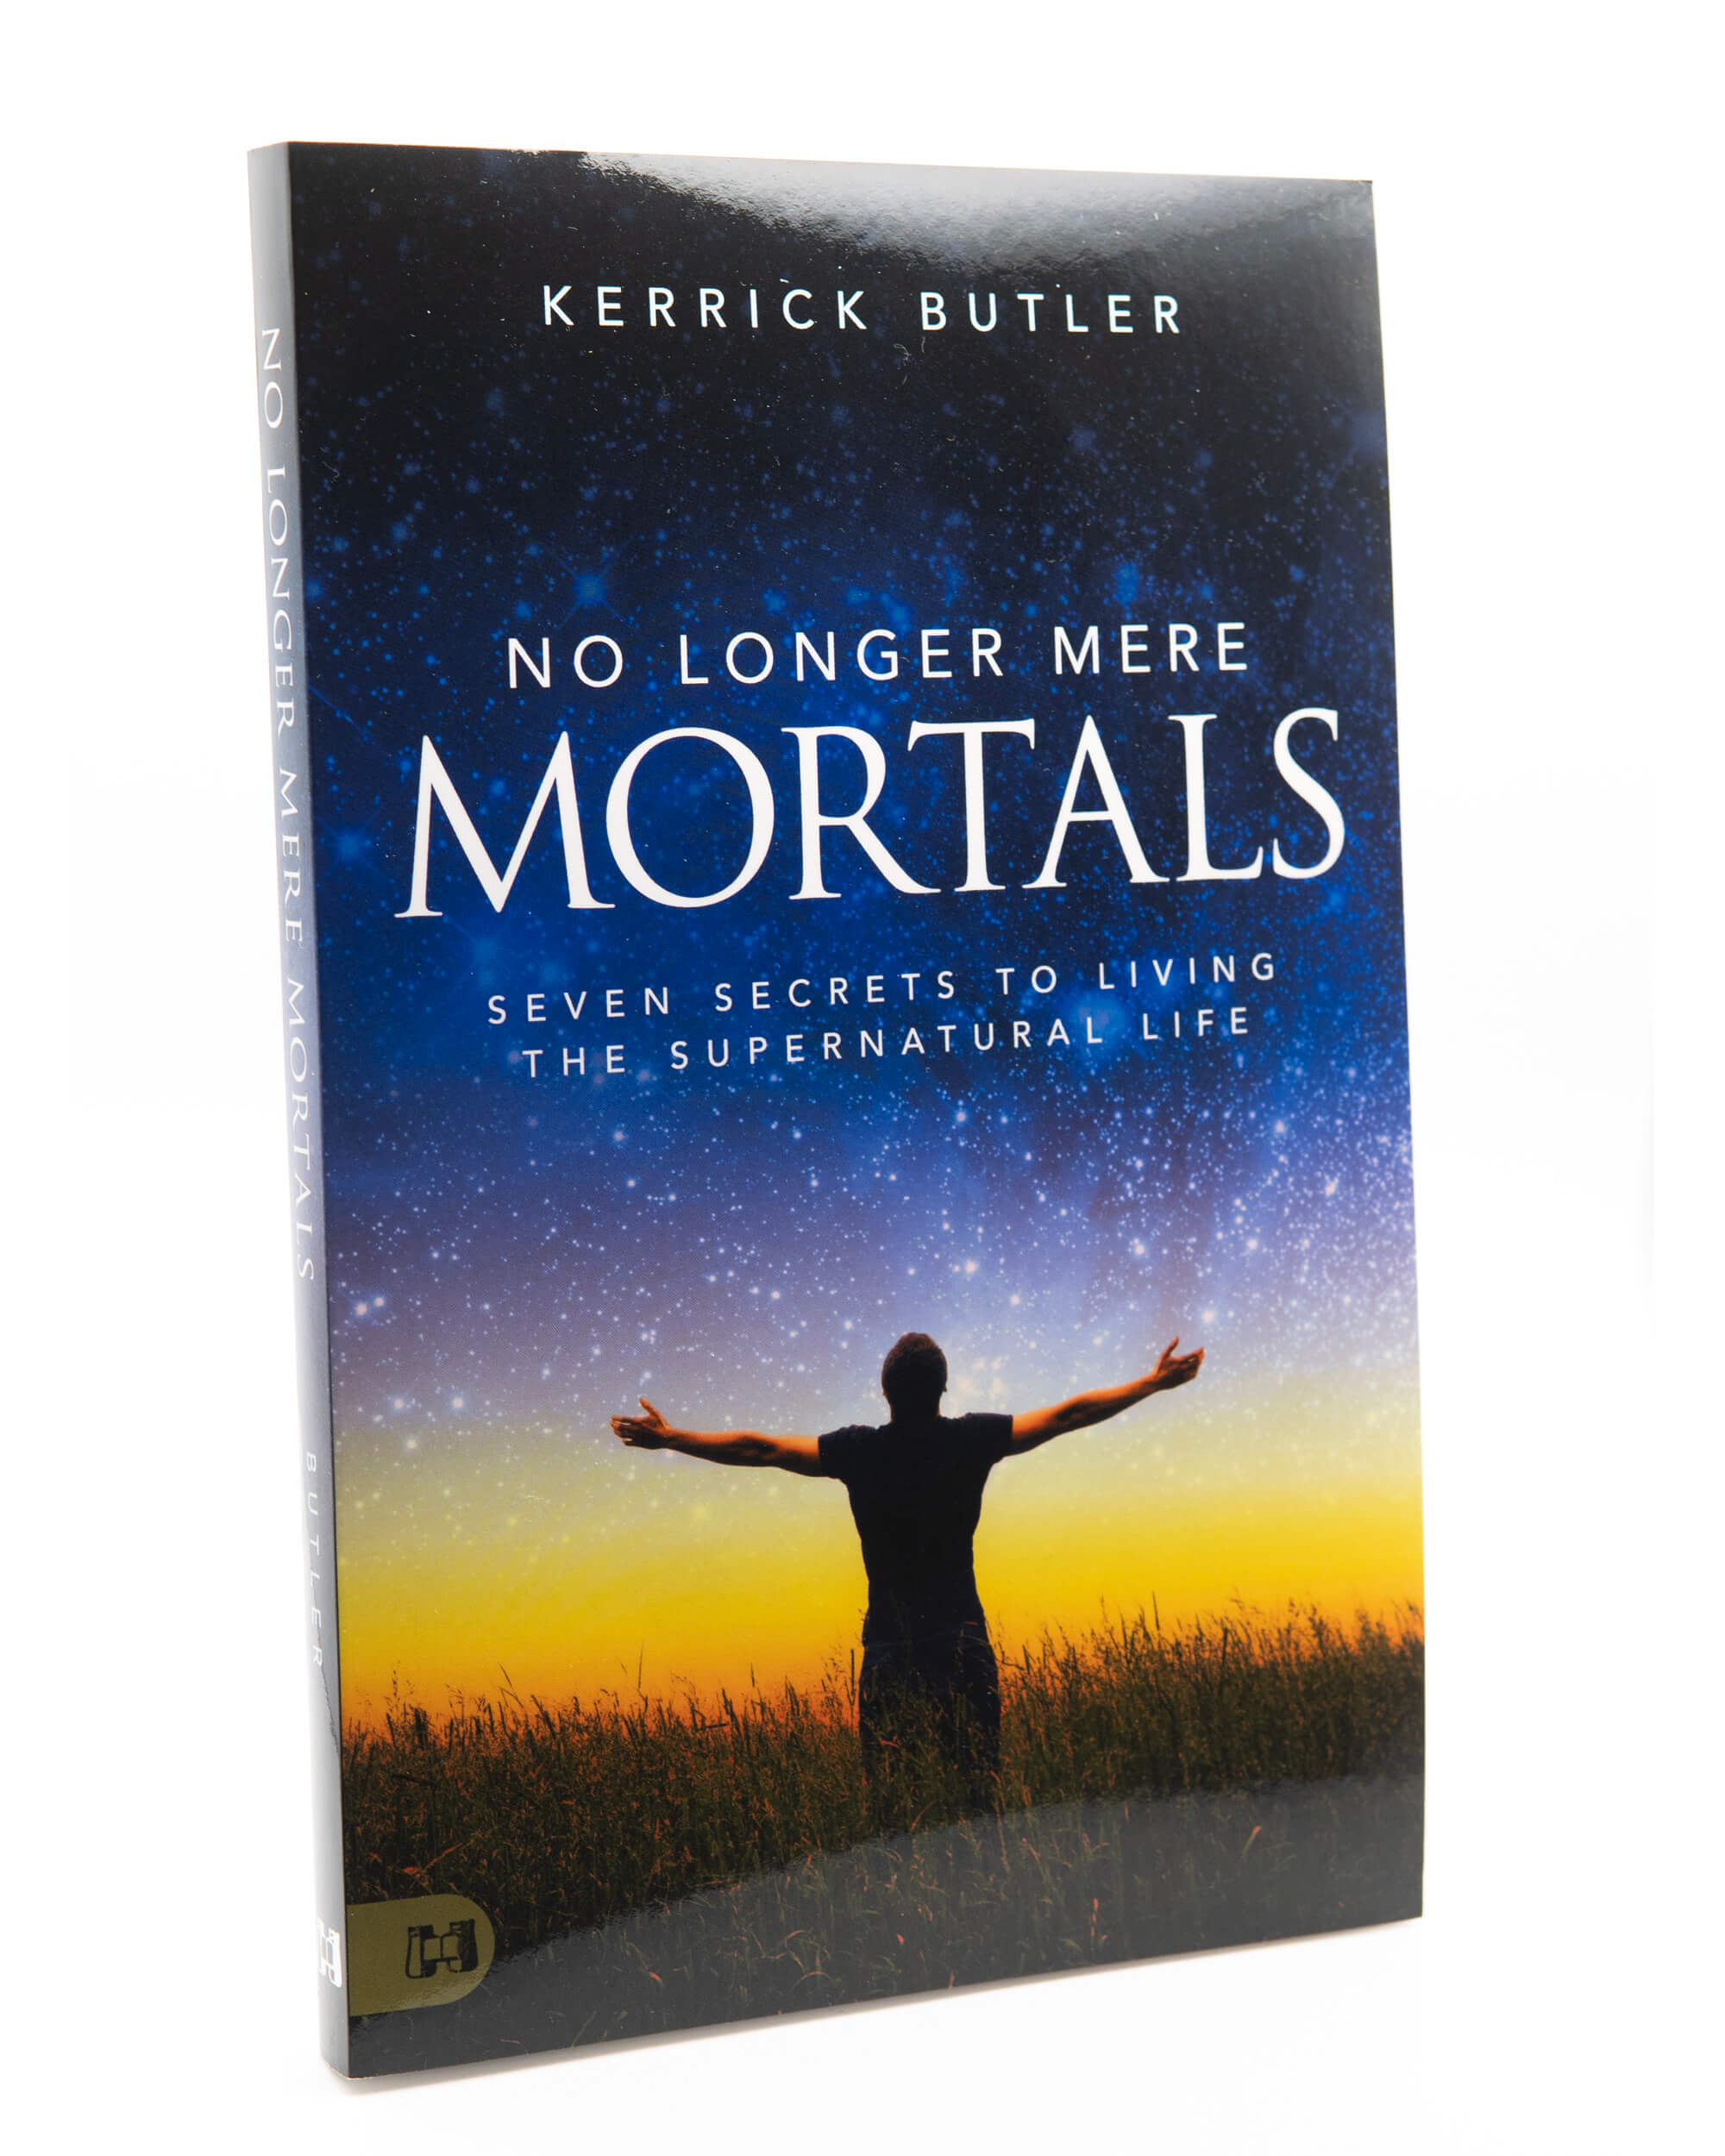 Kerrick Butler's No Longer Mere Mortals; Code: 3805